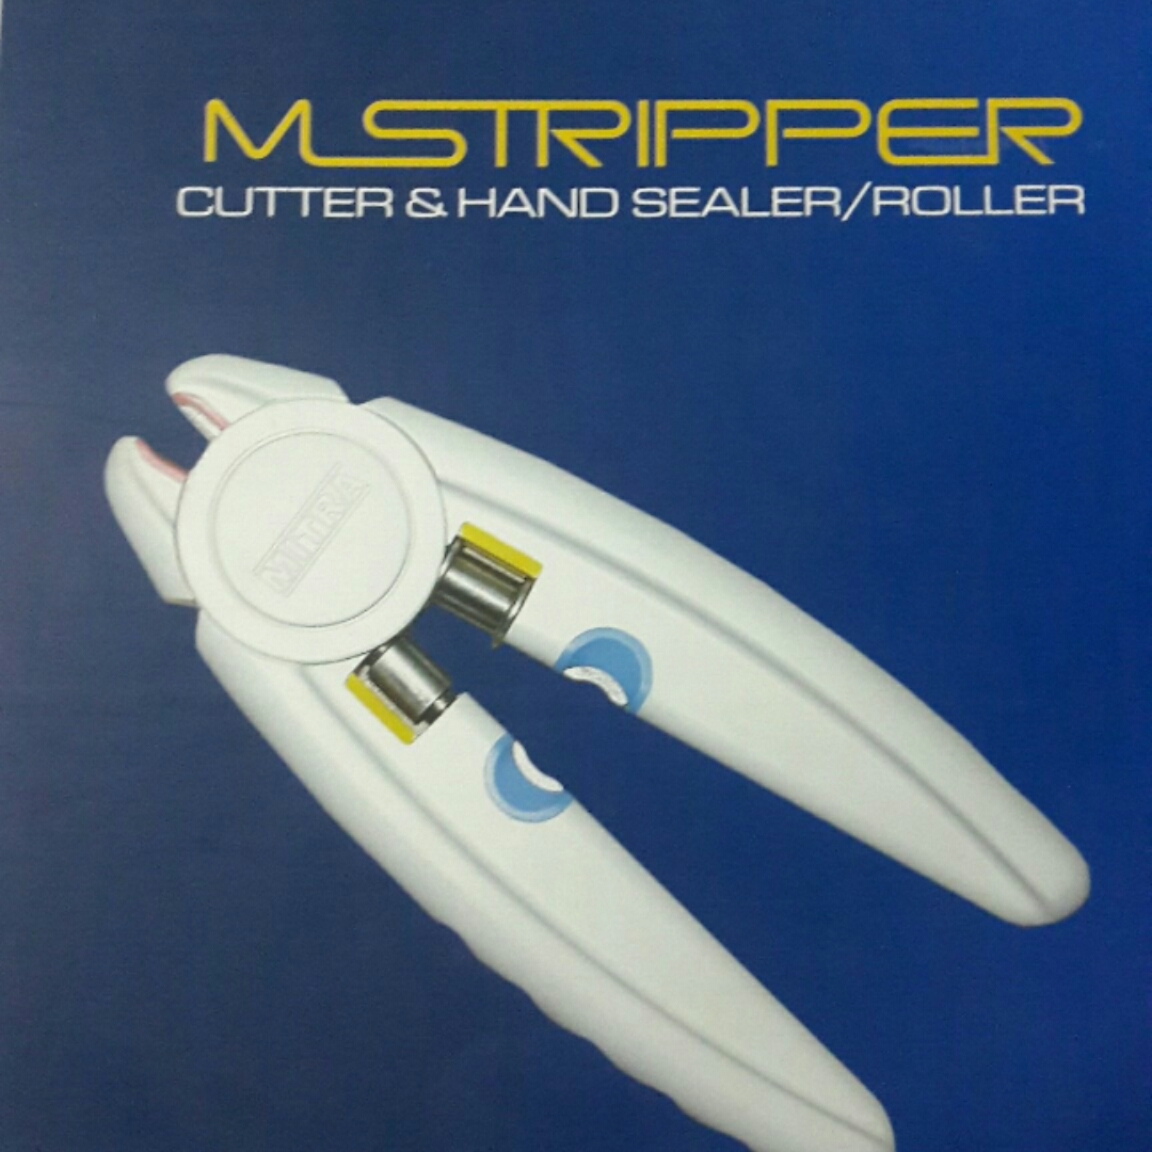 CUTTER/ HAND SEALER/ROLLER